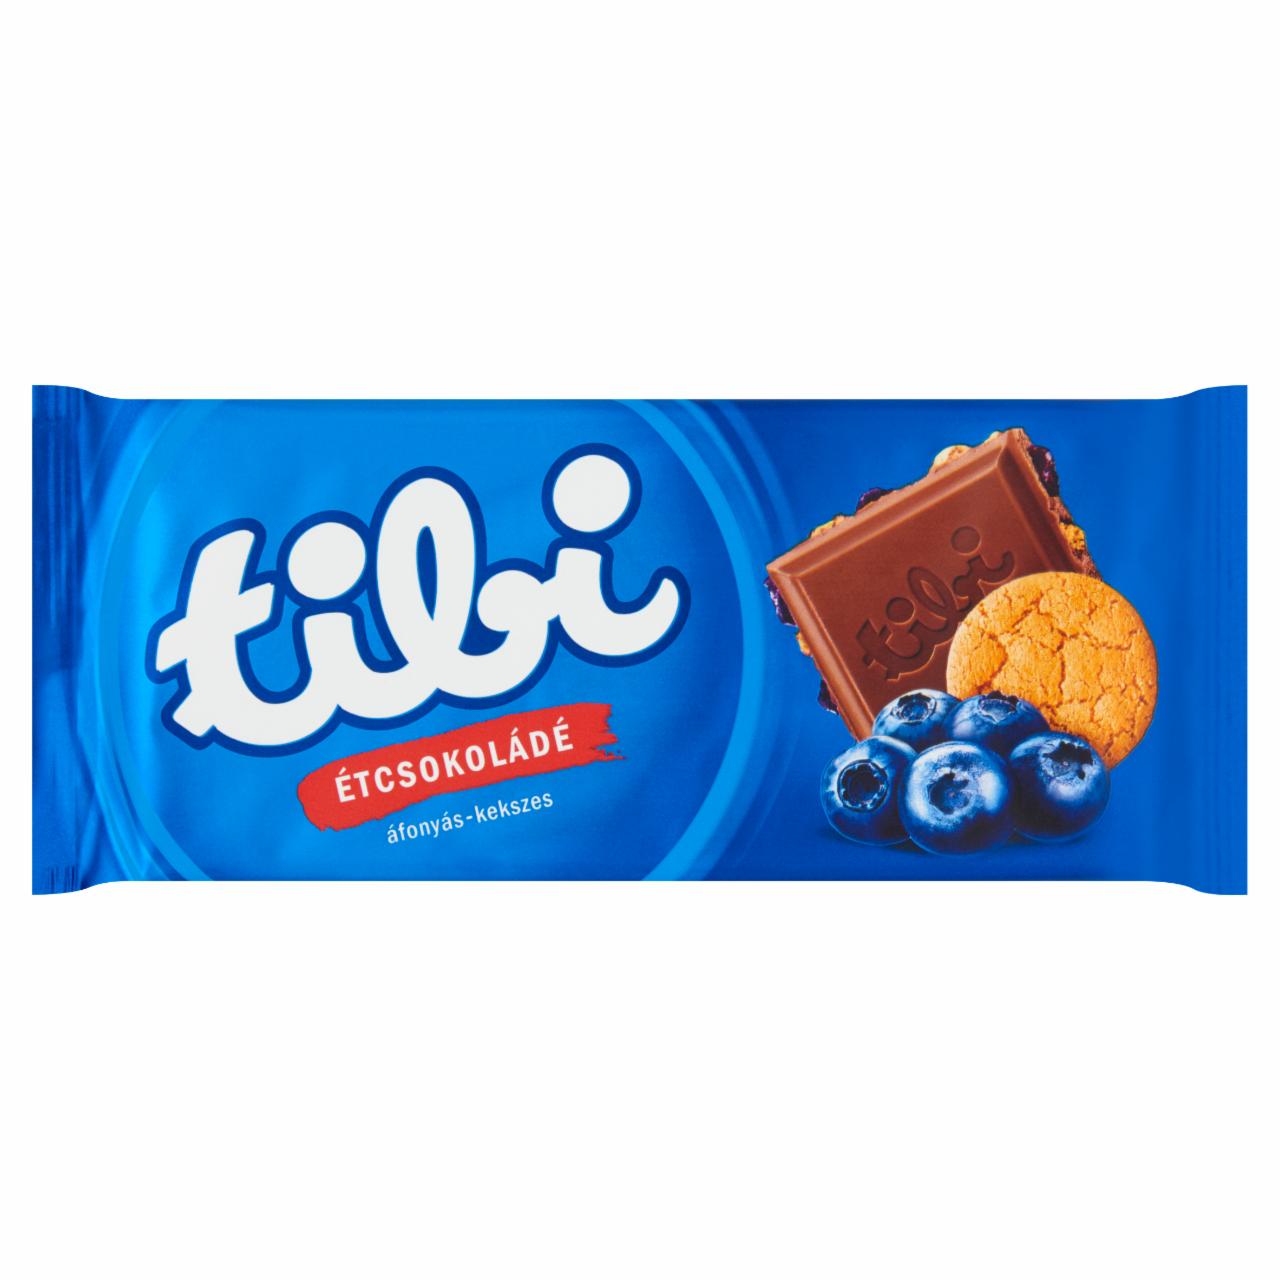 Képek - Tibi áfonyás-kekszes étcsokoládé 90 g